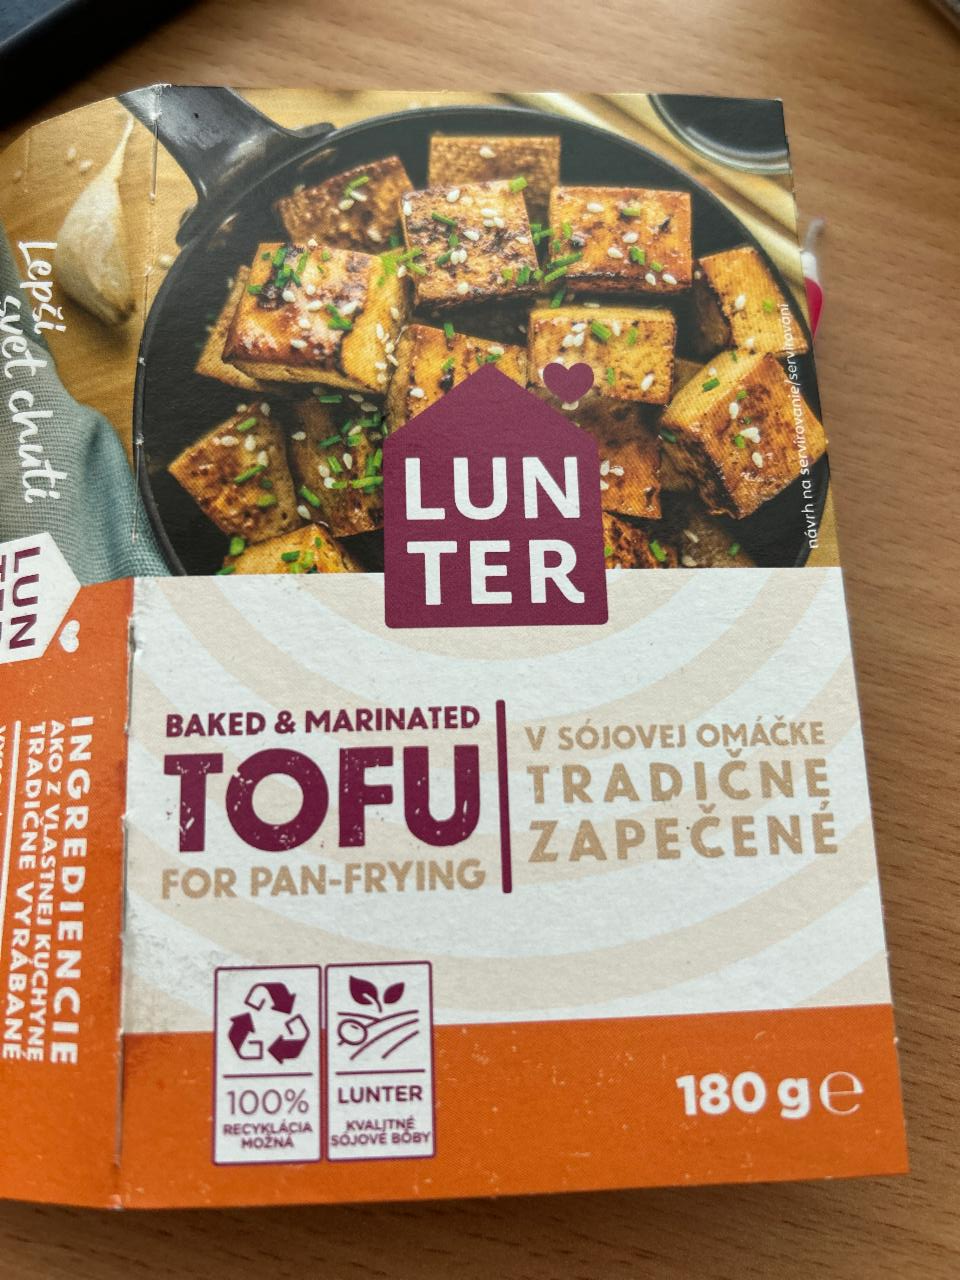 Фото - Marinované tofu na pánev inspirované Asií Lunter